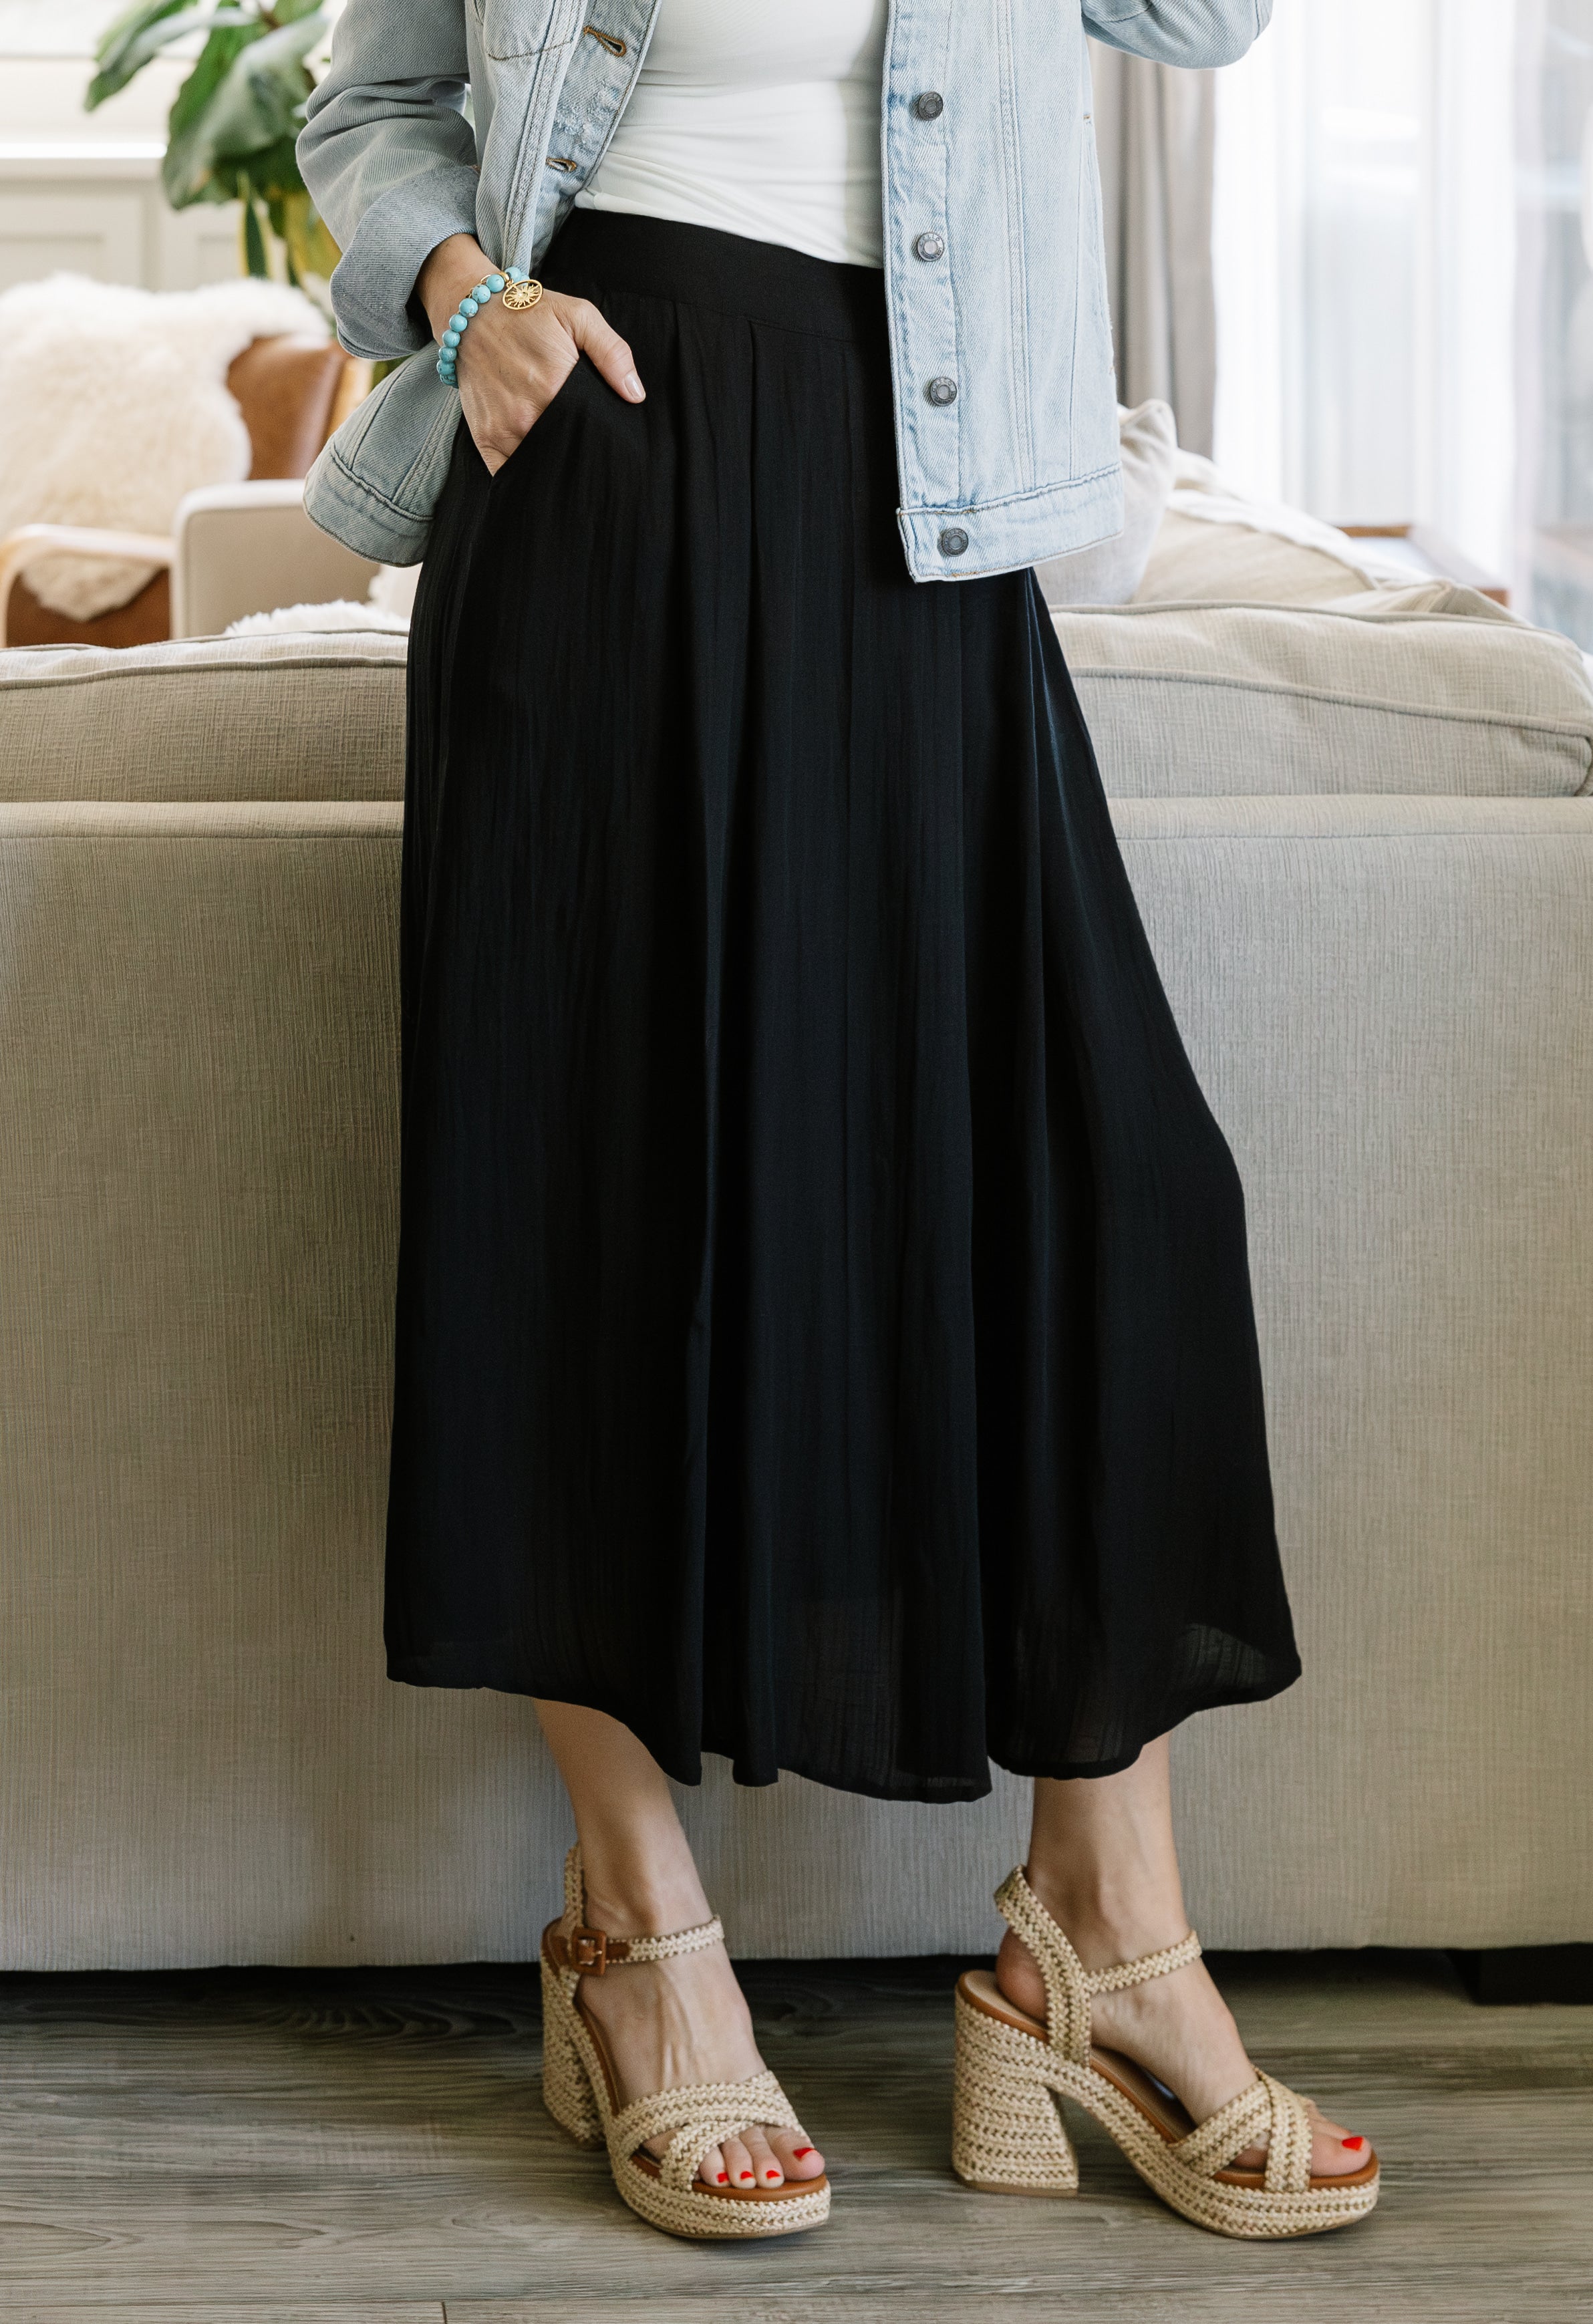 Leona Skirt - BLACK - willows clothing long skirt